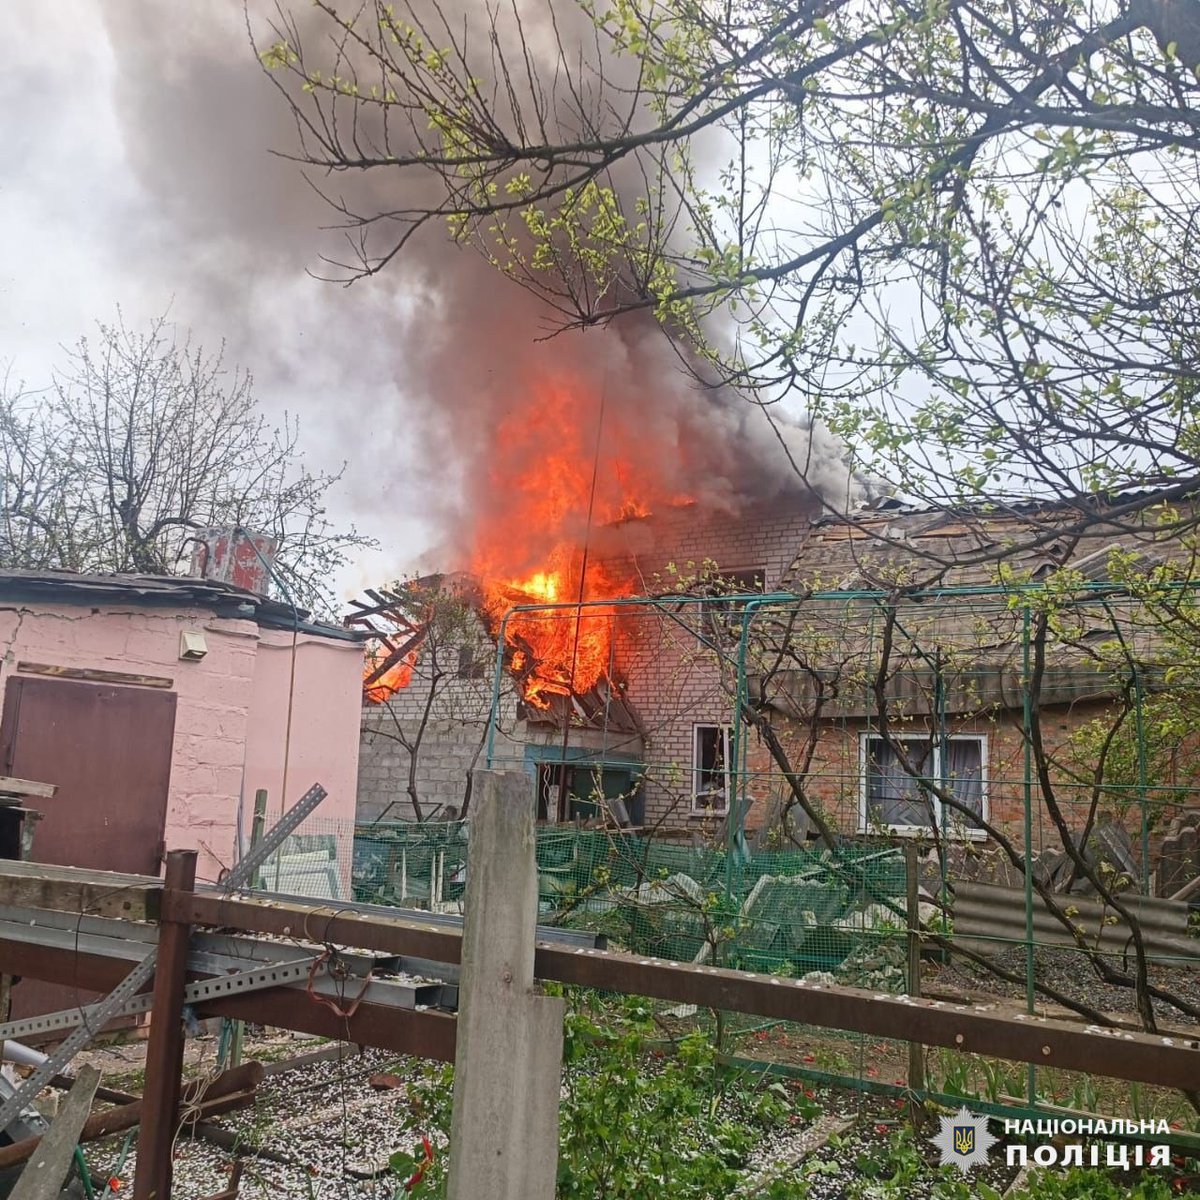 Drei Kinder und eine weitere Person bei russischem Luftangriff in Derhachi in der Region Charkiw verletzt